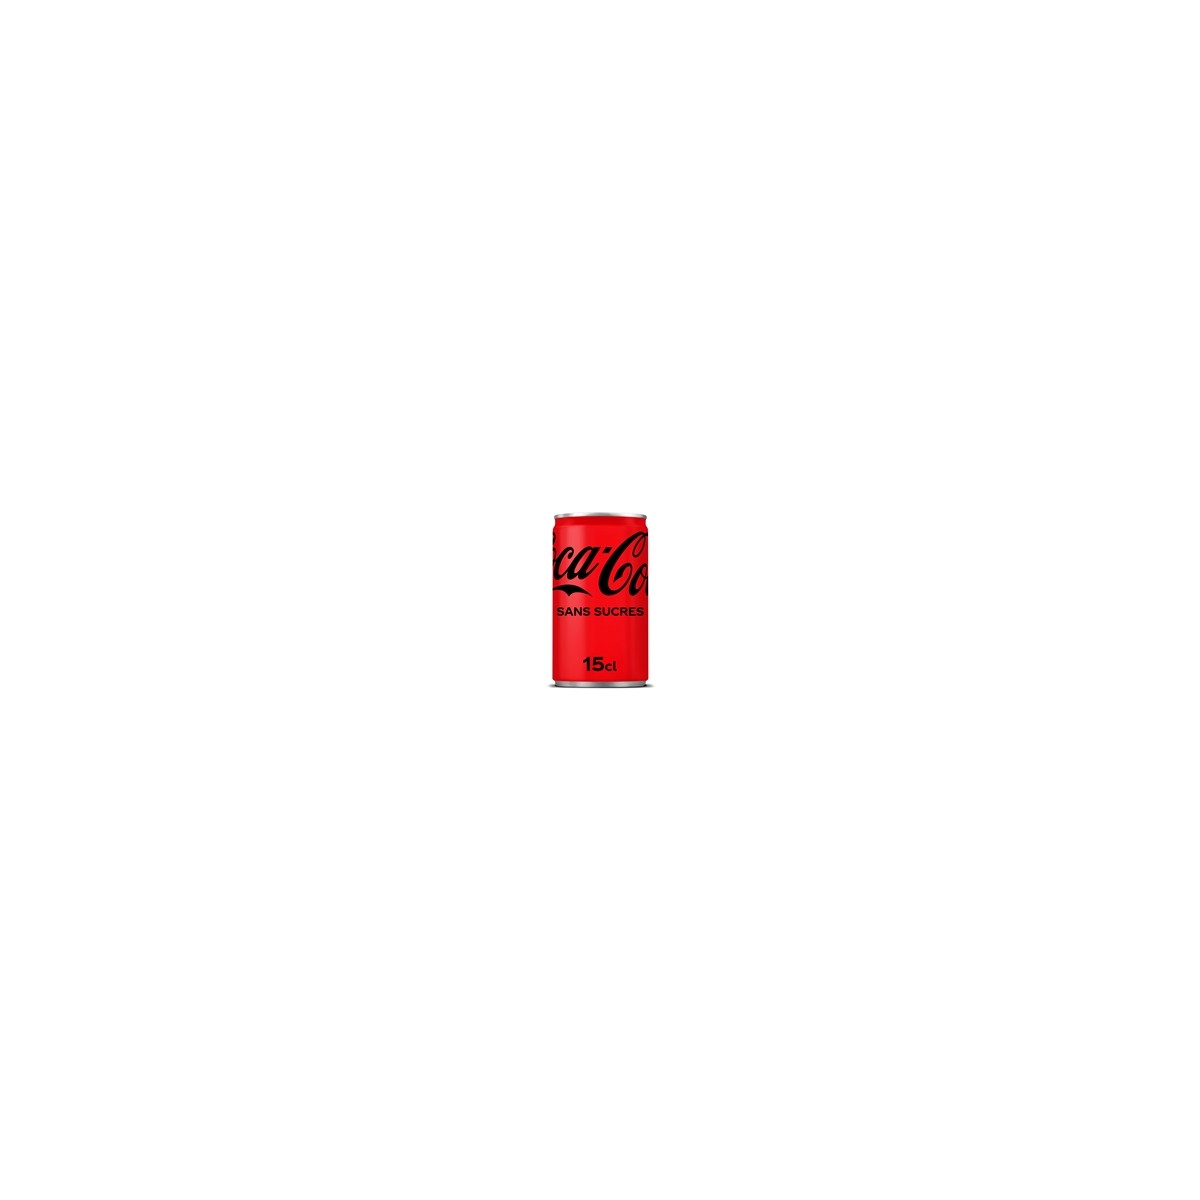 24 Mini Canettes de Coca-Cola Sans Sucres 24 x 15 CL